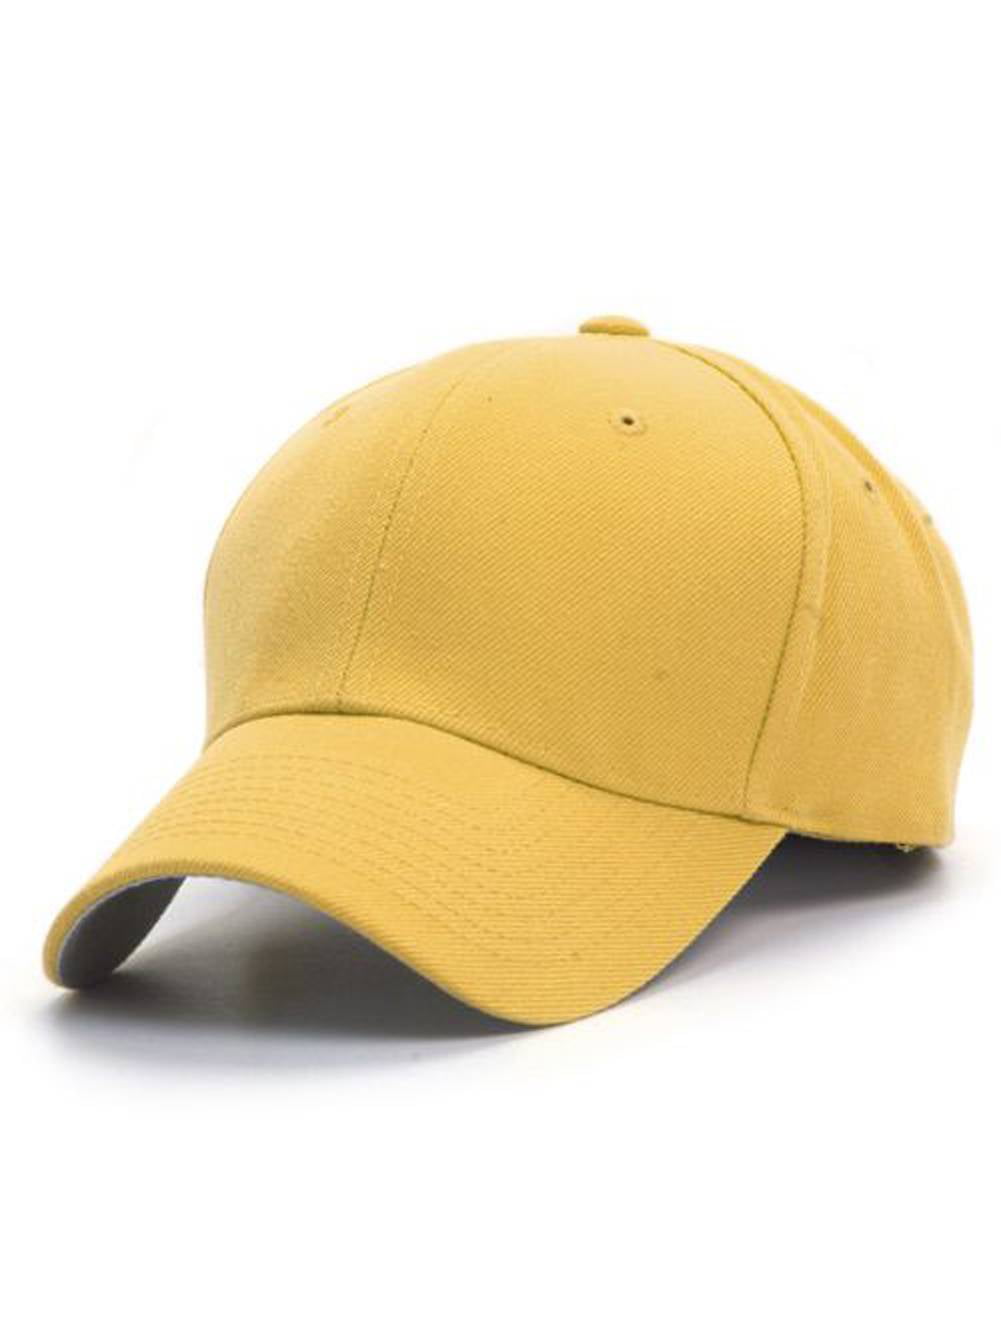 TopHeadwear Blank Kids Youth Baseball Hat - Walmart.com